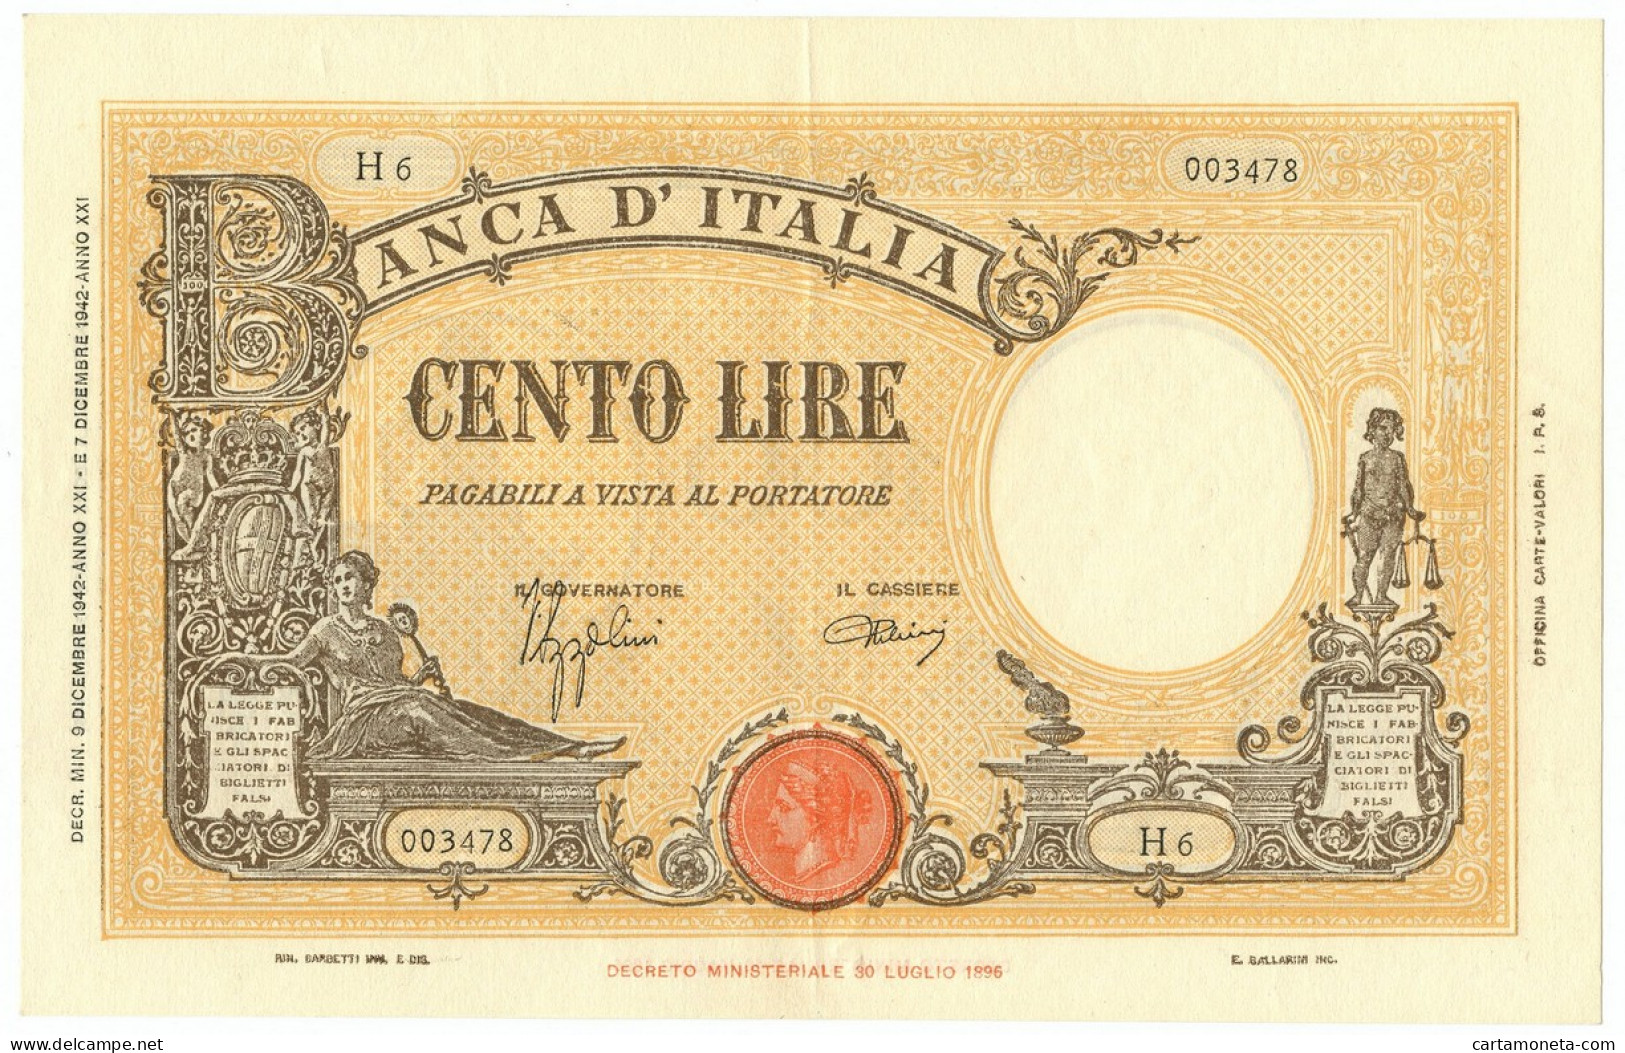 100 LIRE BARBETTI GRANDE B GIALLO TESTINA FASCIO 09/12/1942 SUP- - Regno D'Italia – Autres